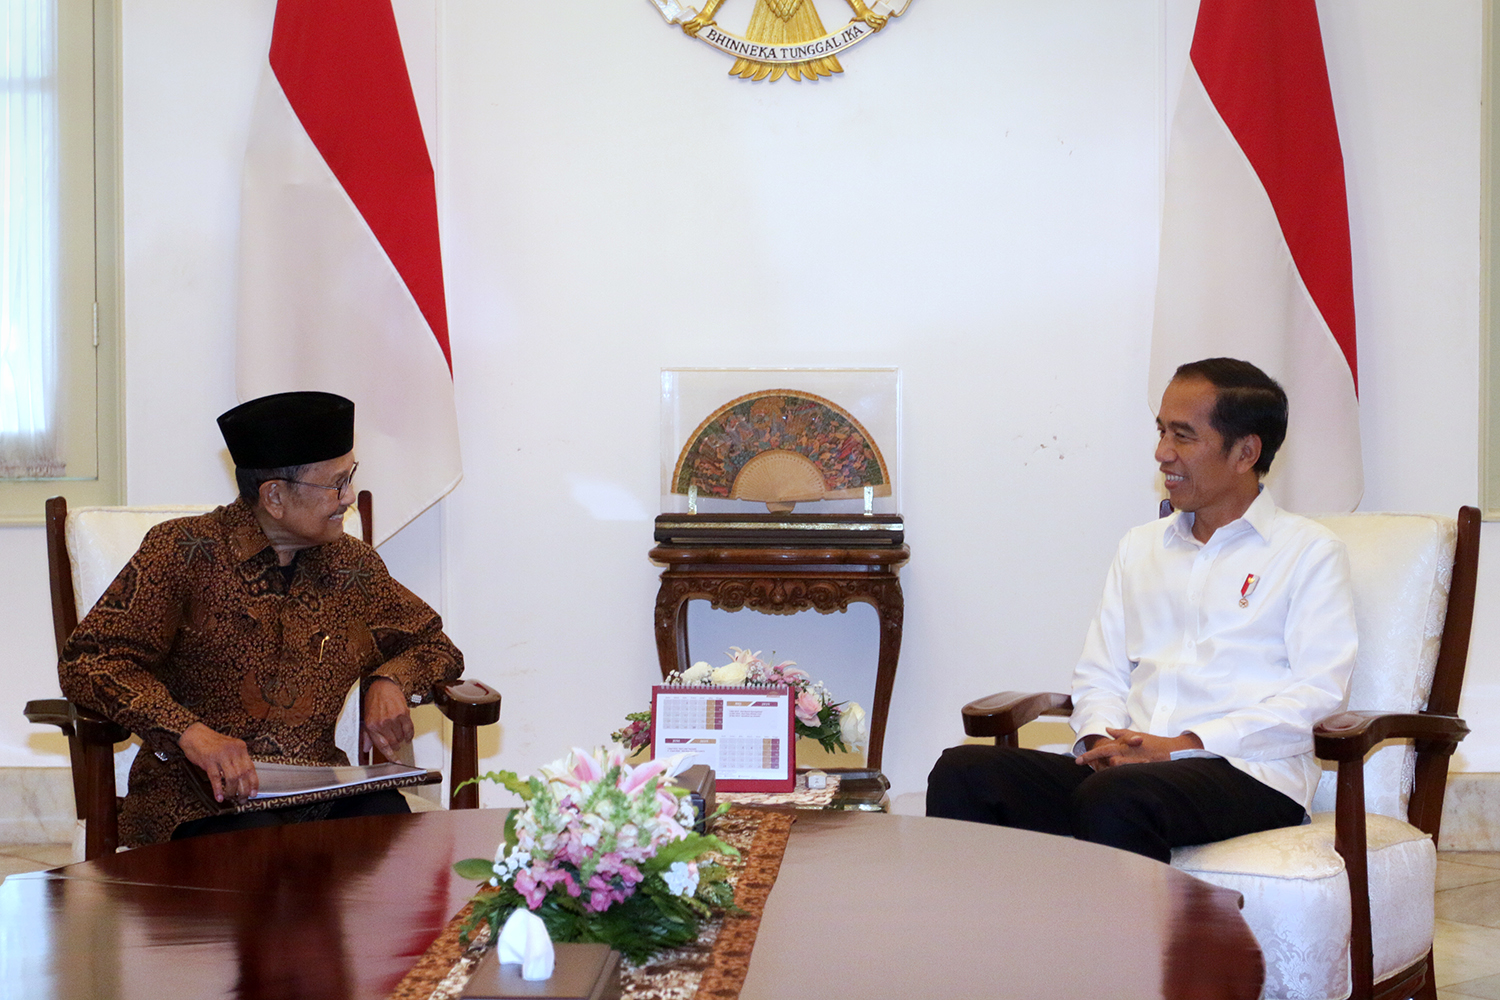 Soal Bertemu Prabowo, Presiden Jokowi: Saya Sudah Sampaikan Keinginan, Tapi Belum Ketemu